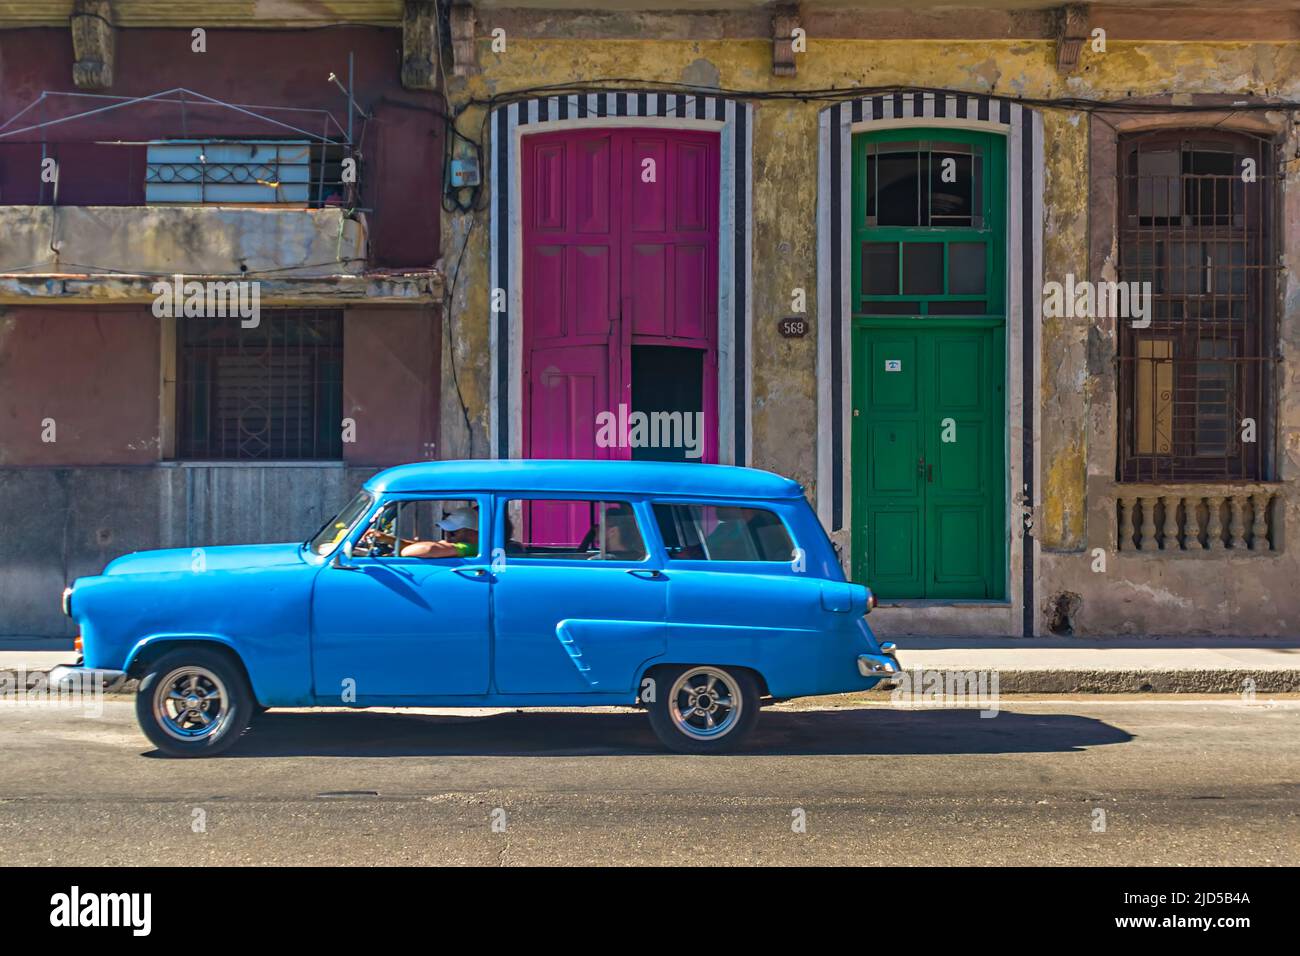 Une voiture d'époque bleu clair passe devant une porte de maison pourpre et verte dans la vieille Havane, Cuba Banque D'Images